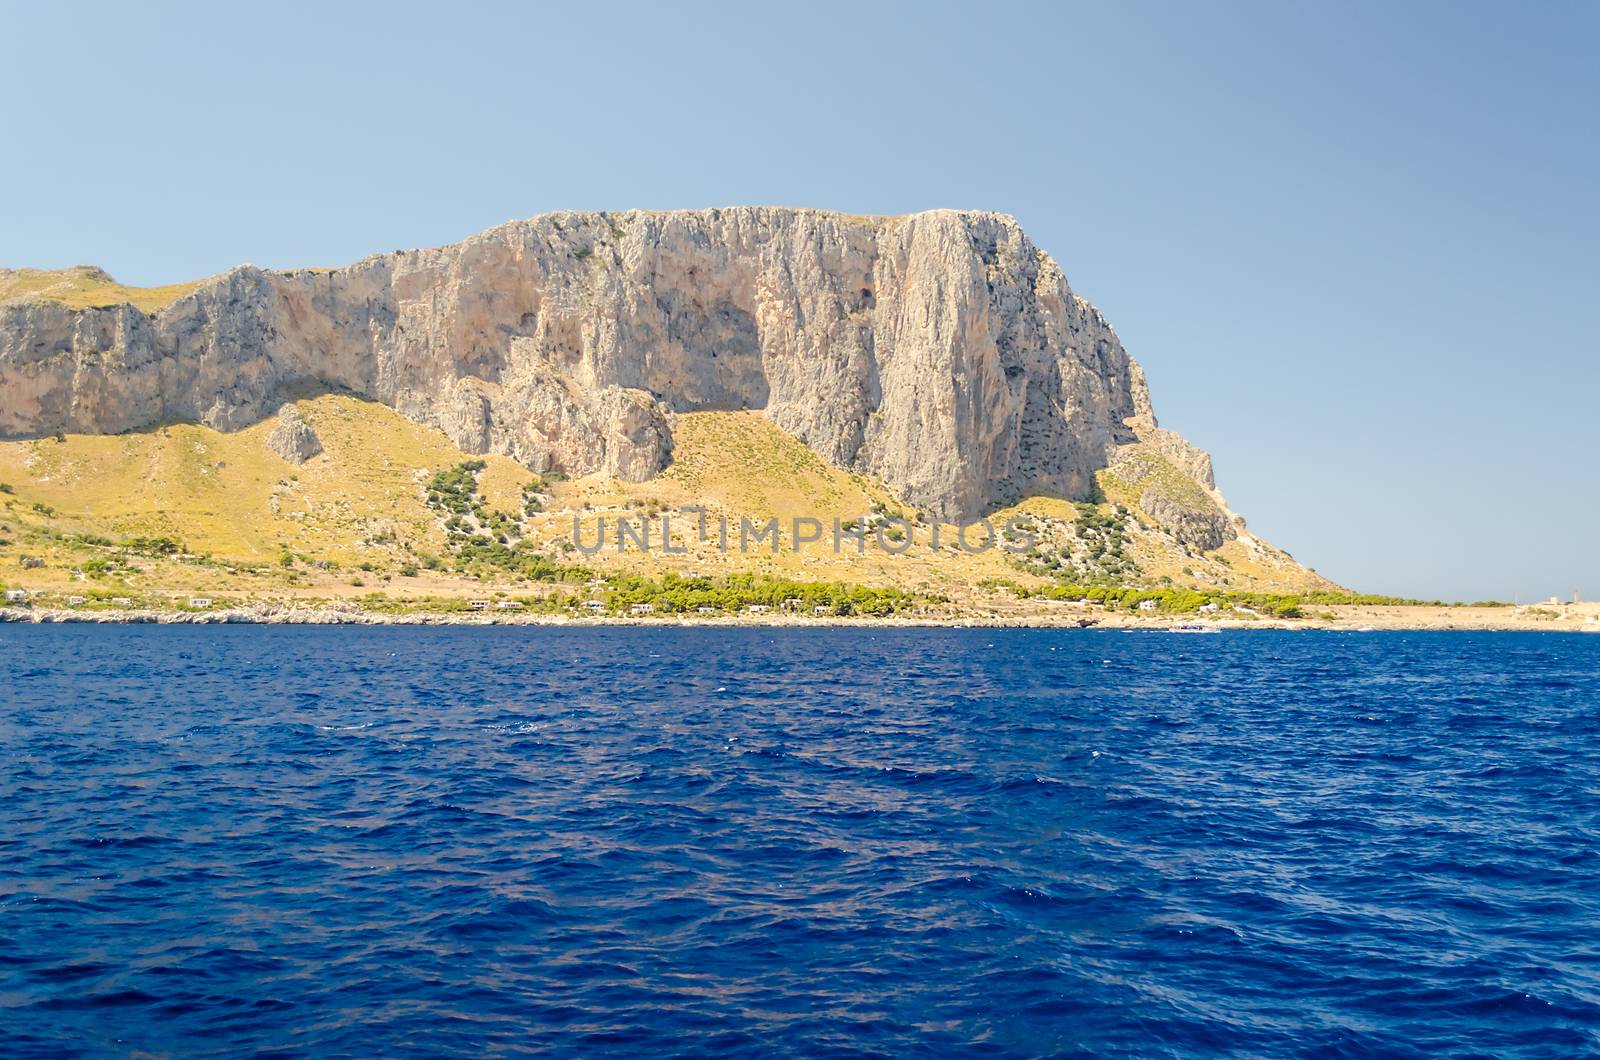 View of San Vito Lo Capo from the sea, Sicily